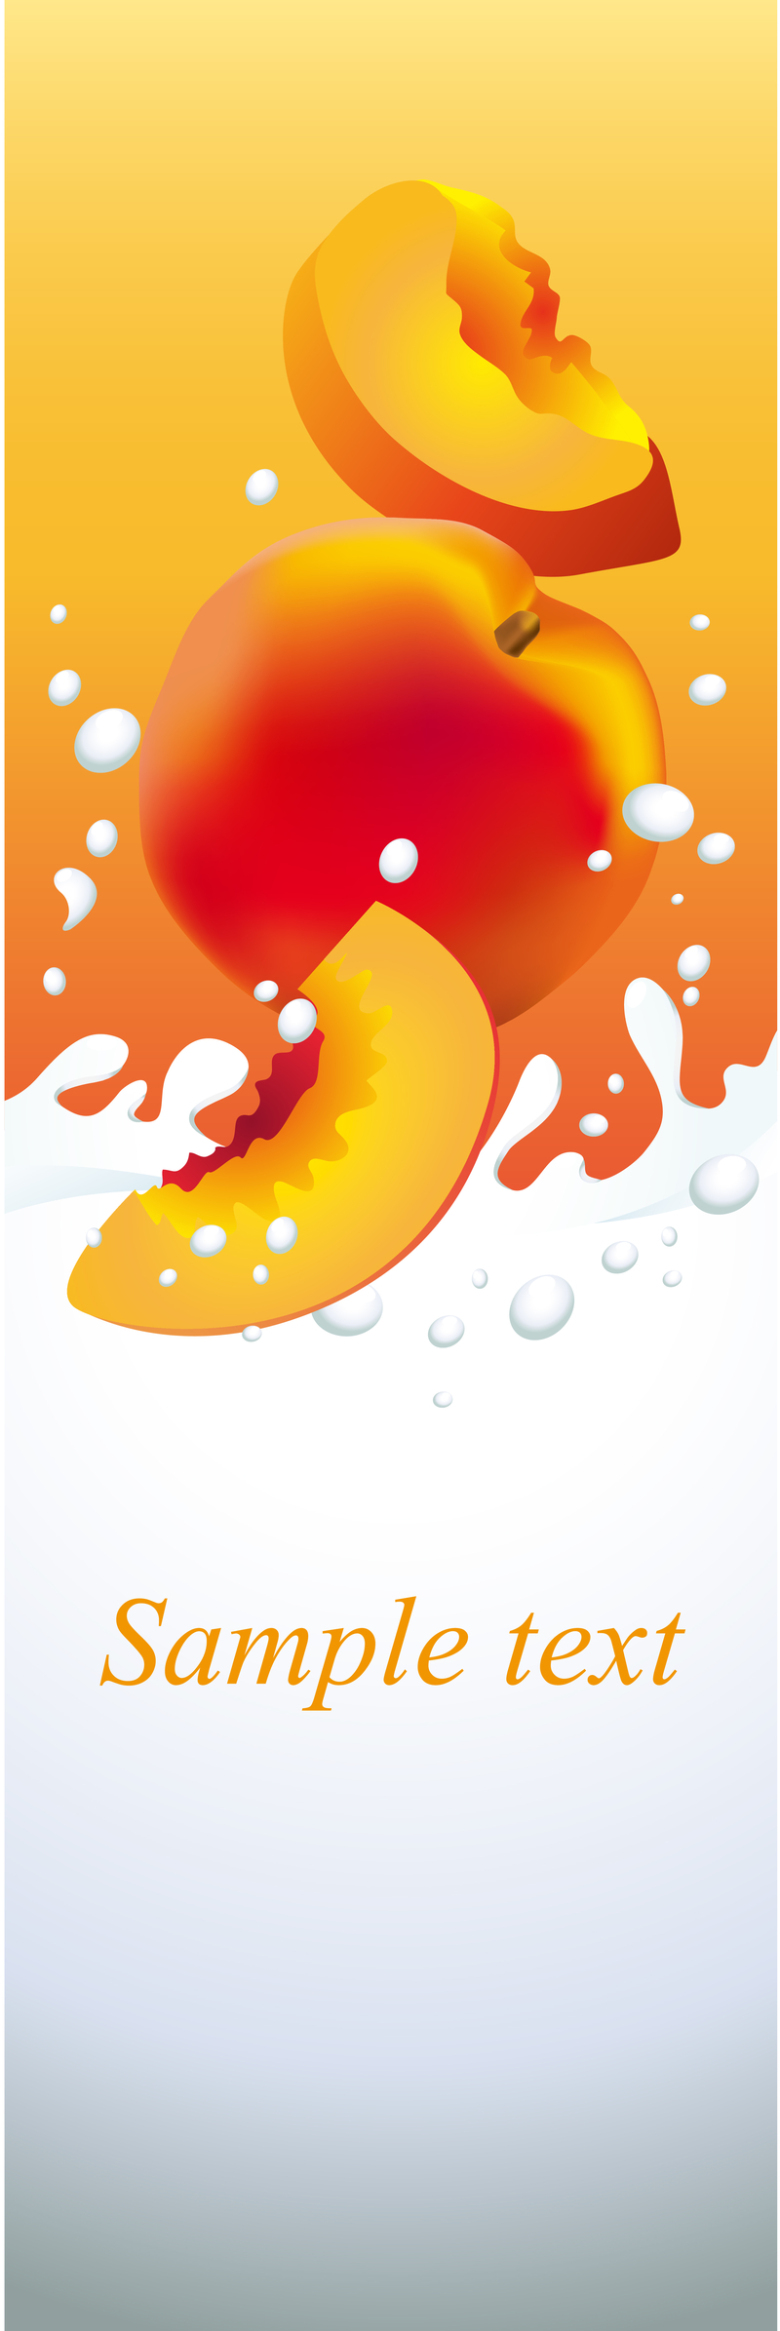 黄桃牛奶水果海报背景素材